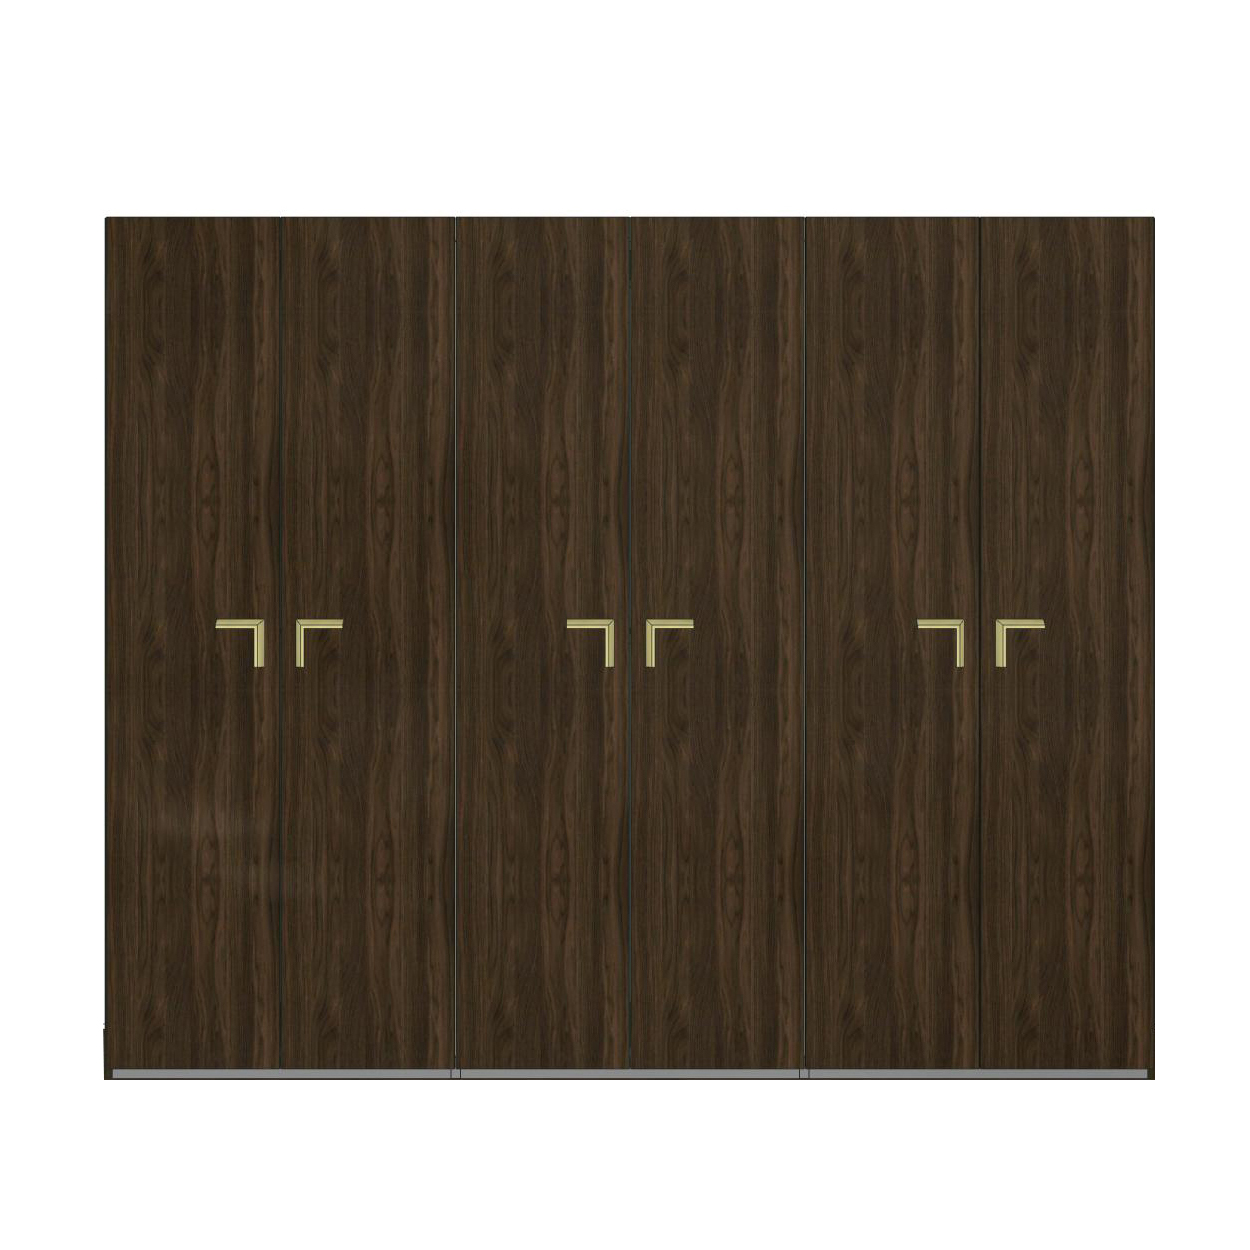 Шкаф платяной Camelgroup Smart Noce Patrizio, 6-х дверный, без зеркал, цвет: грецкий орех, 278x60x228 см (162AR6.03NP)162AR6.03NP